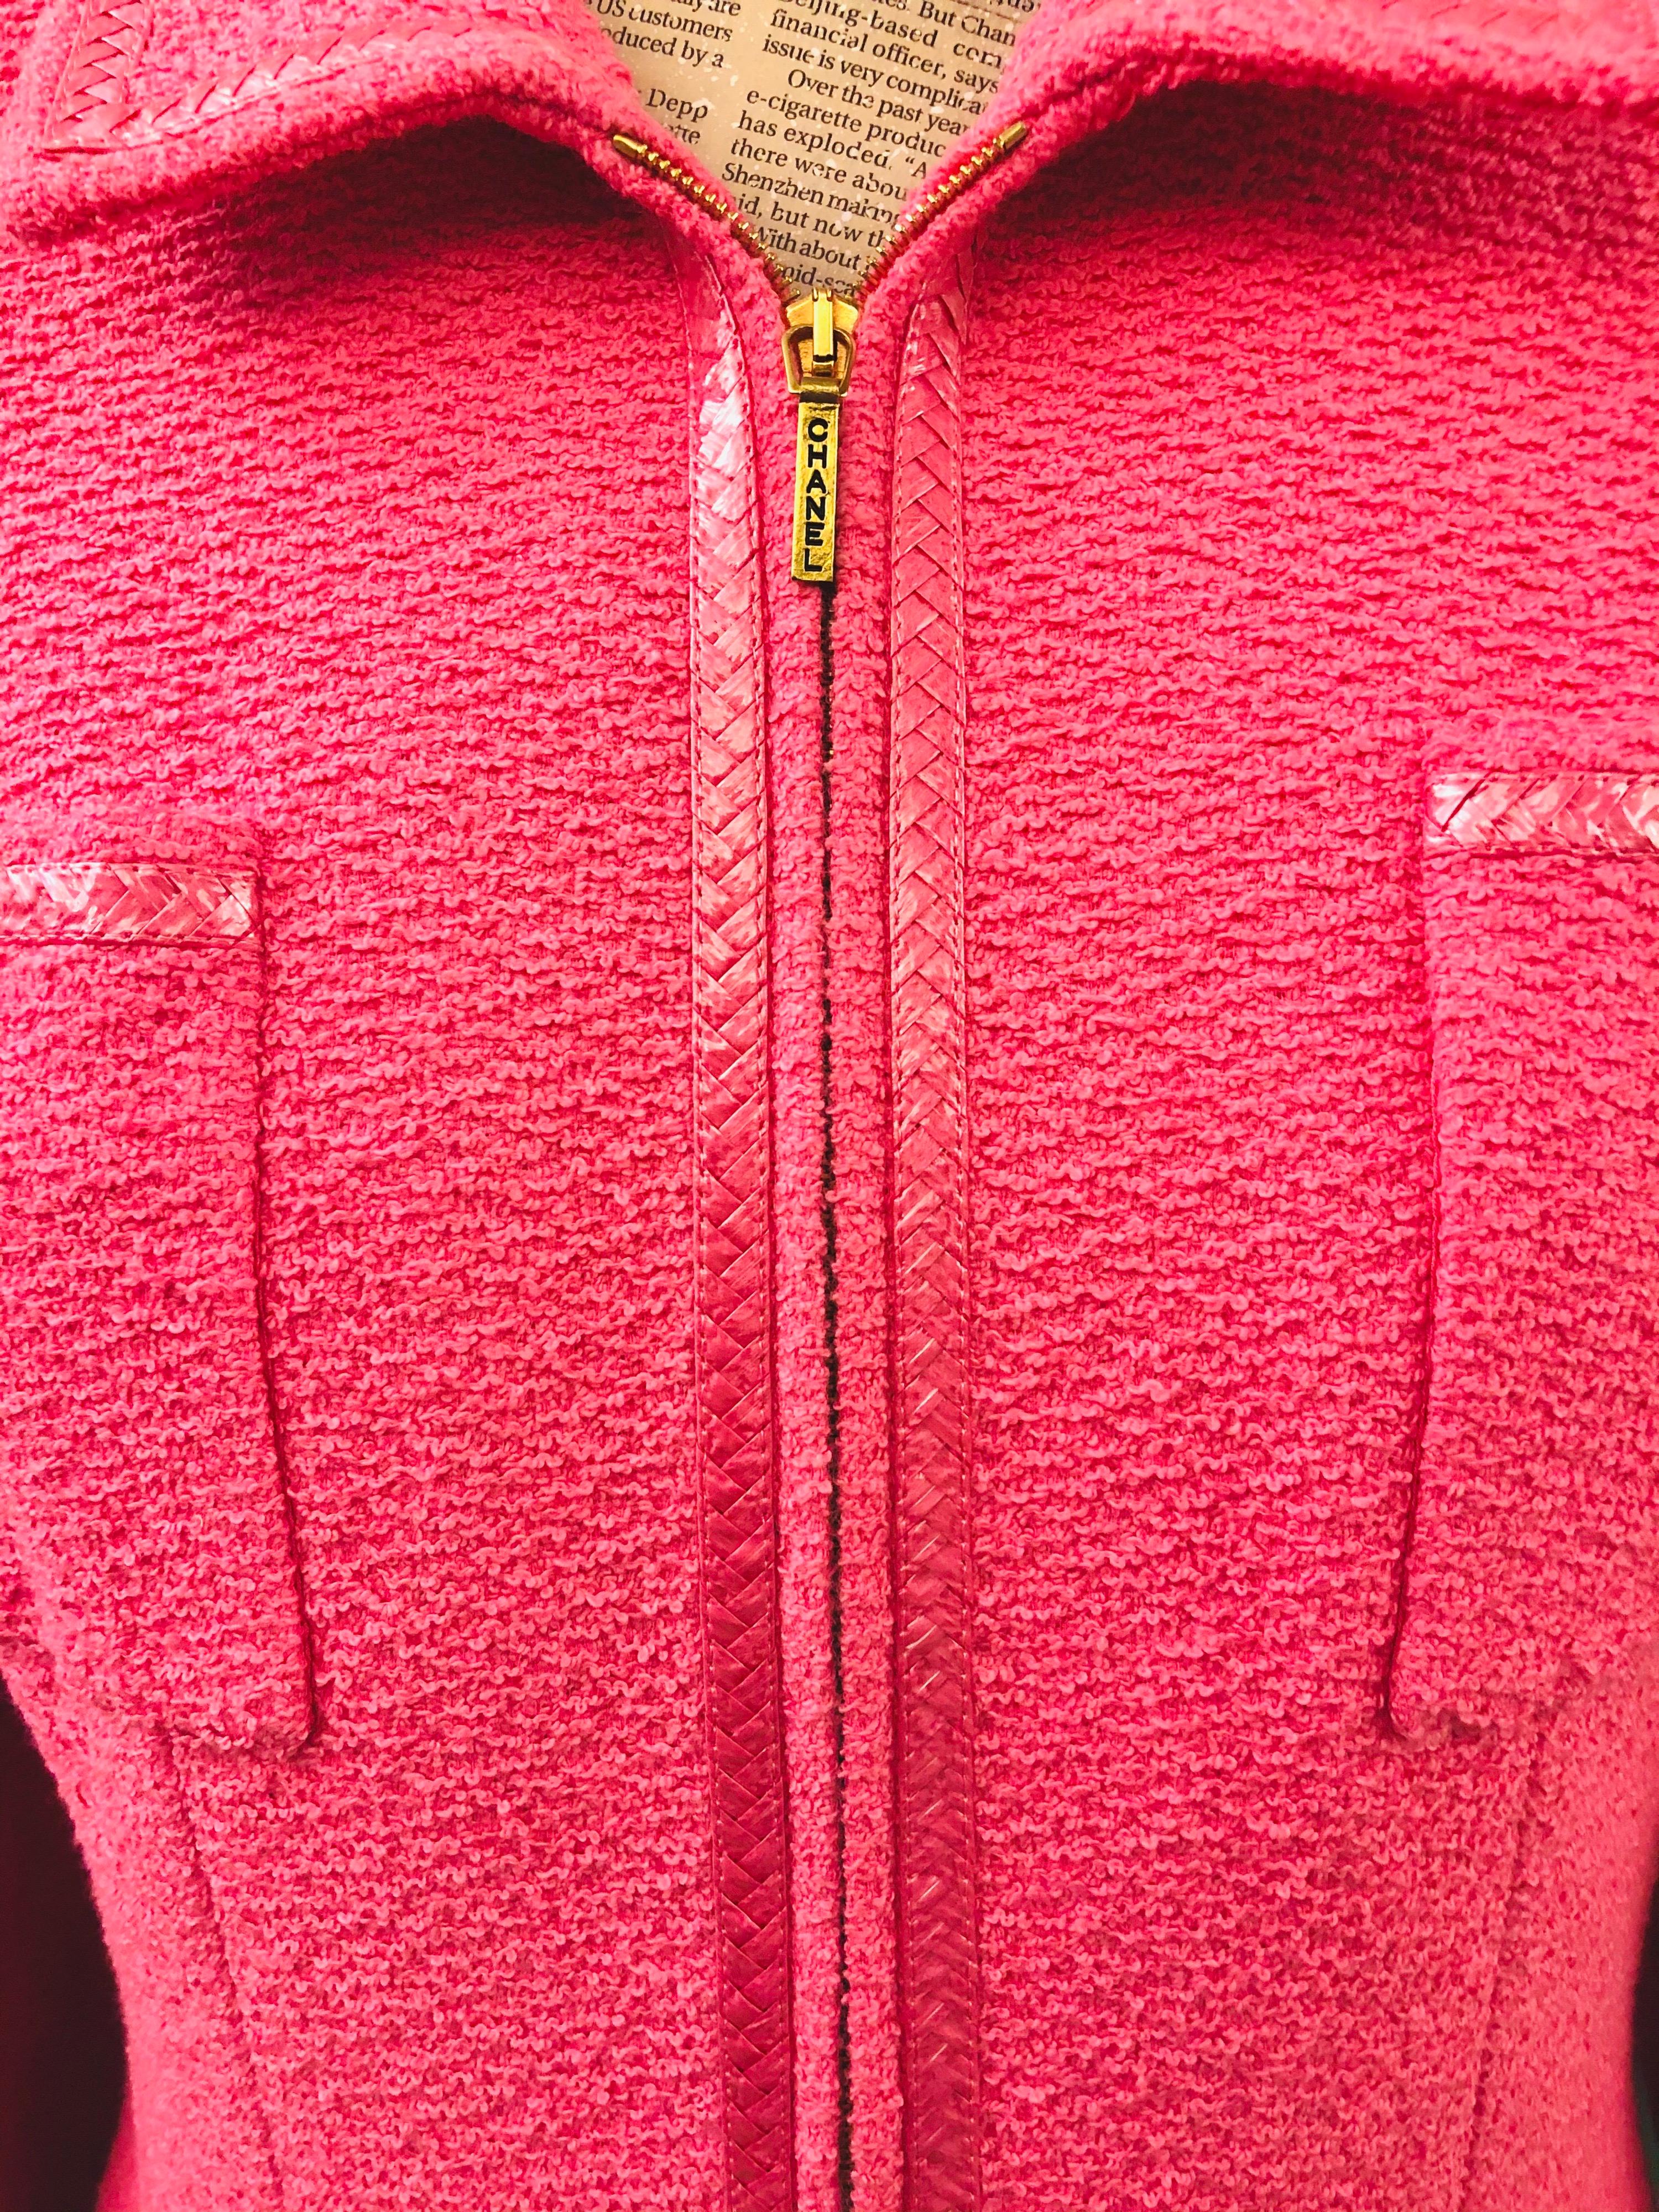 - Vintage Chanel veste en tweed rose de la collection printemps 1995. 

- Fermeture à glissière en métal doré 